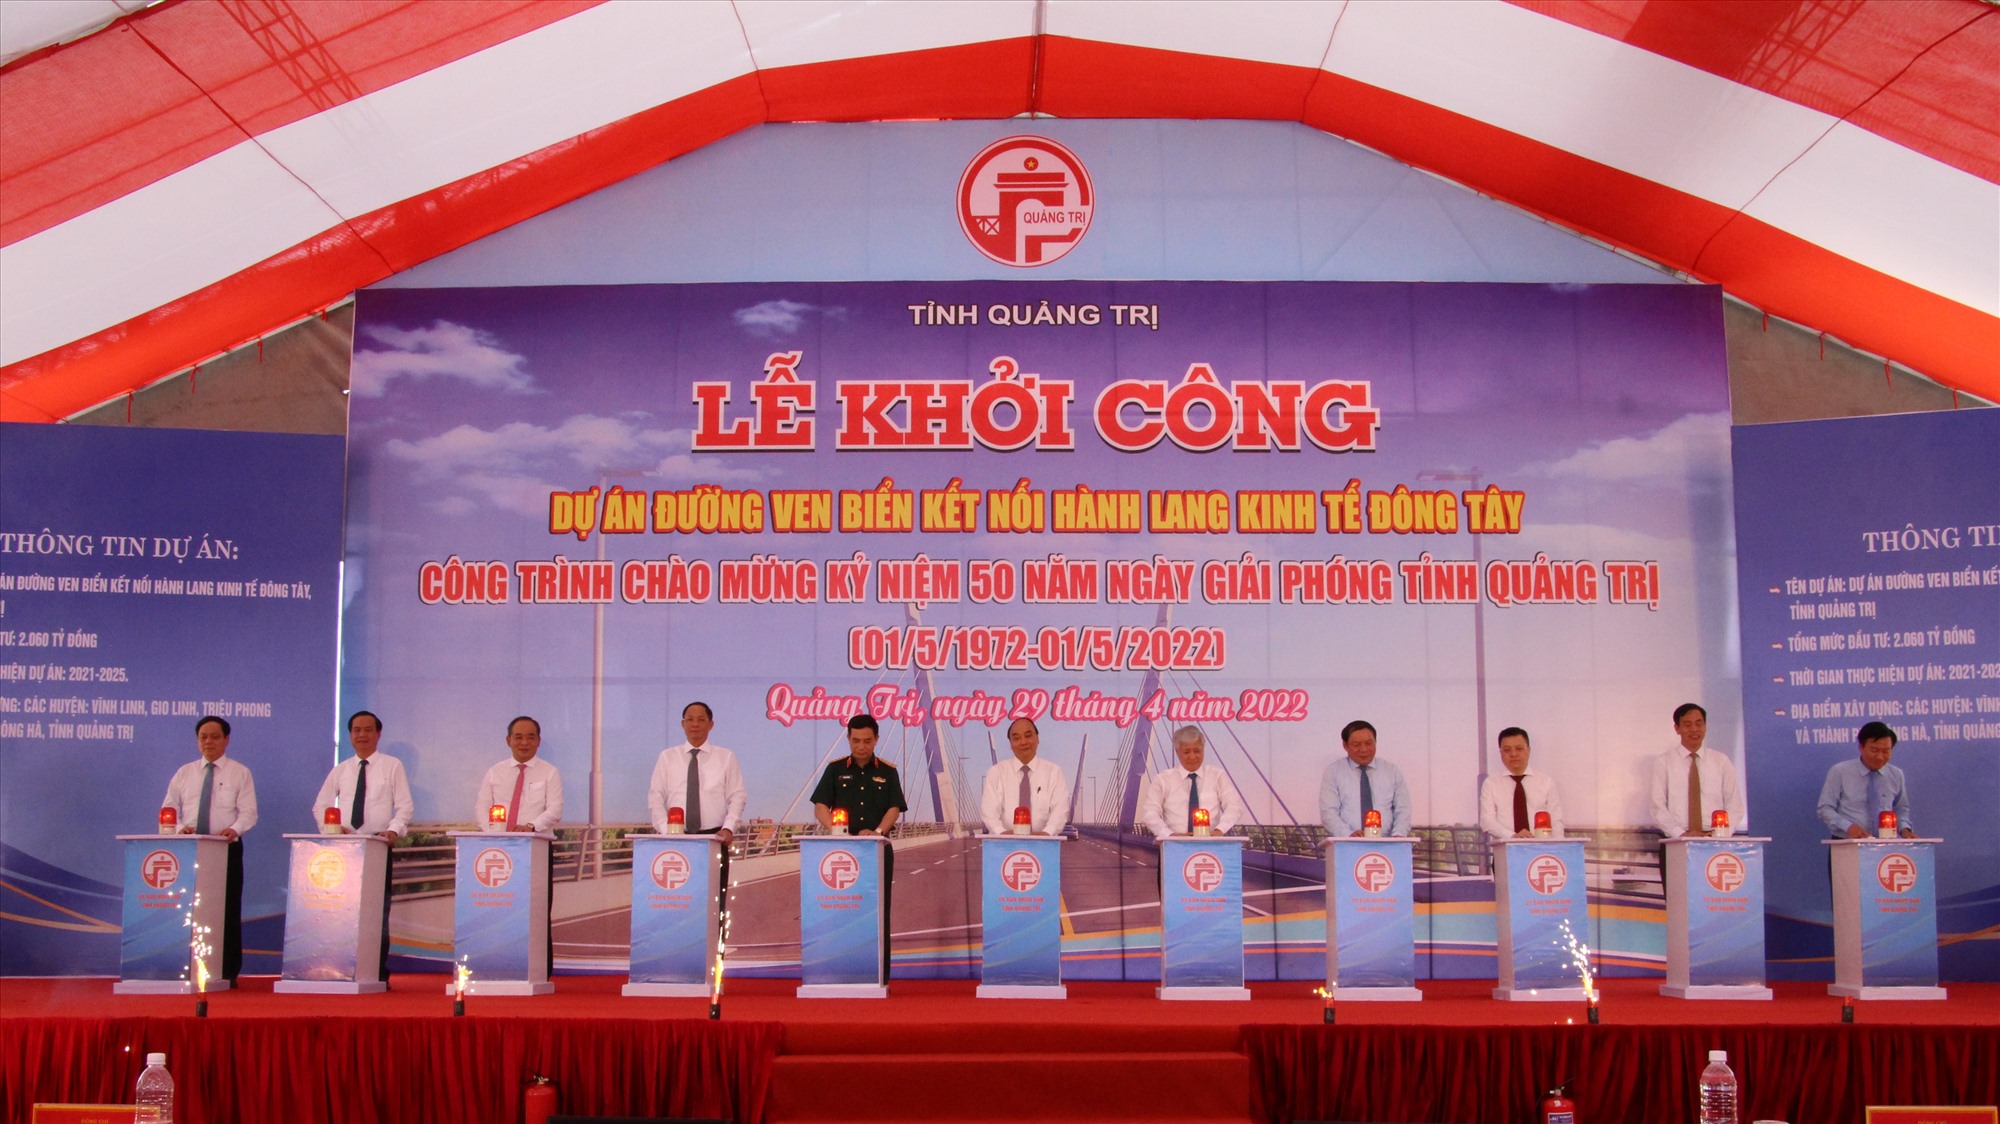 Chủ tịch nước Nguyễn Xuân Phúc, các đại biểu và lãnh đạo tỉnh ấn nút khởi công dự án đường ven biển kết nối Hành lang kinh tế Đông Tây tại Quảng Trị